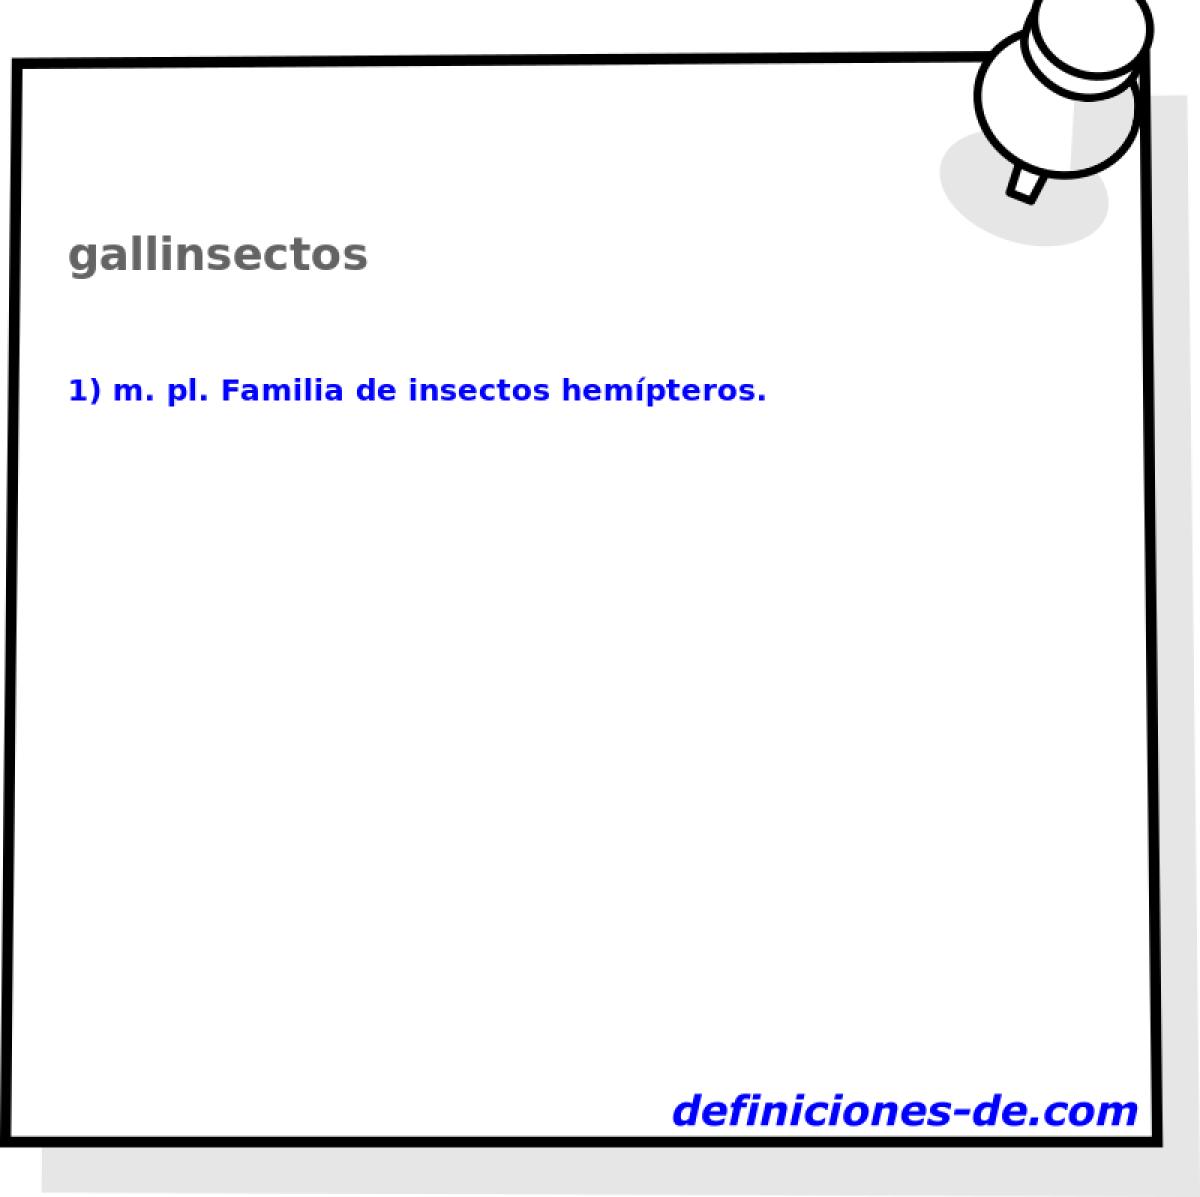 gallinsectos 